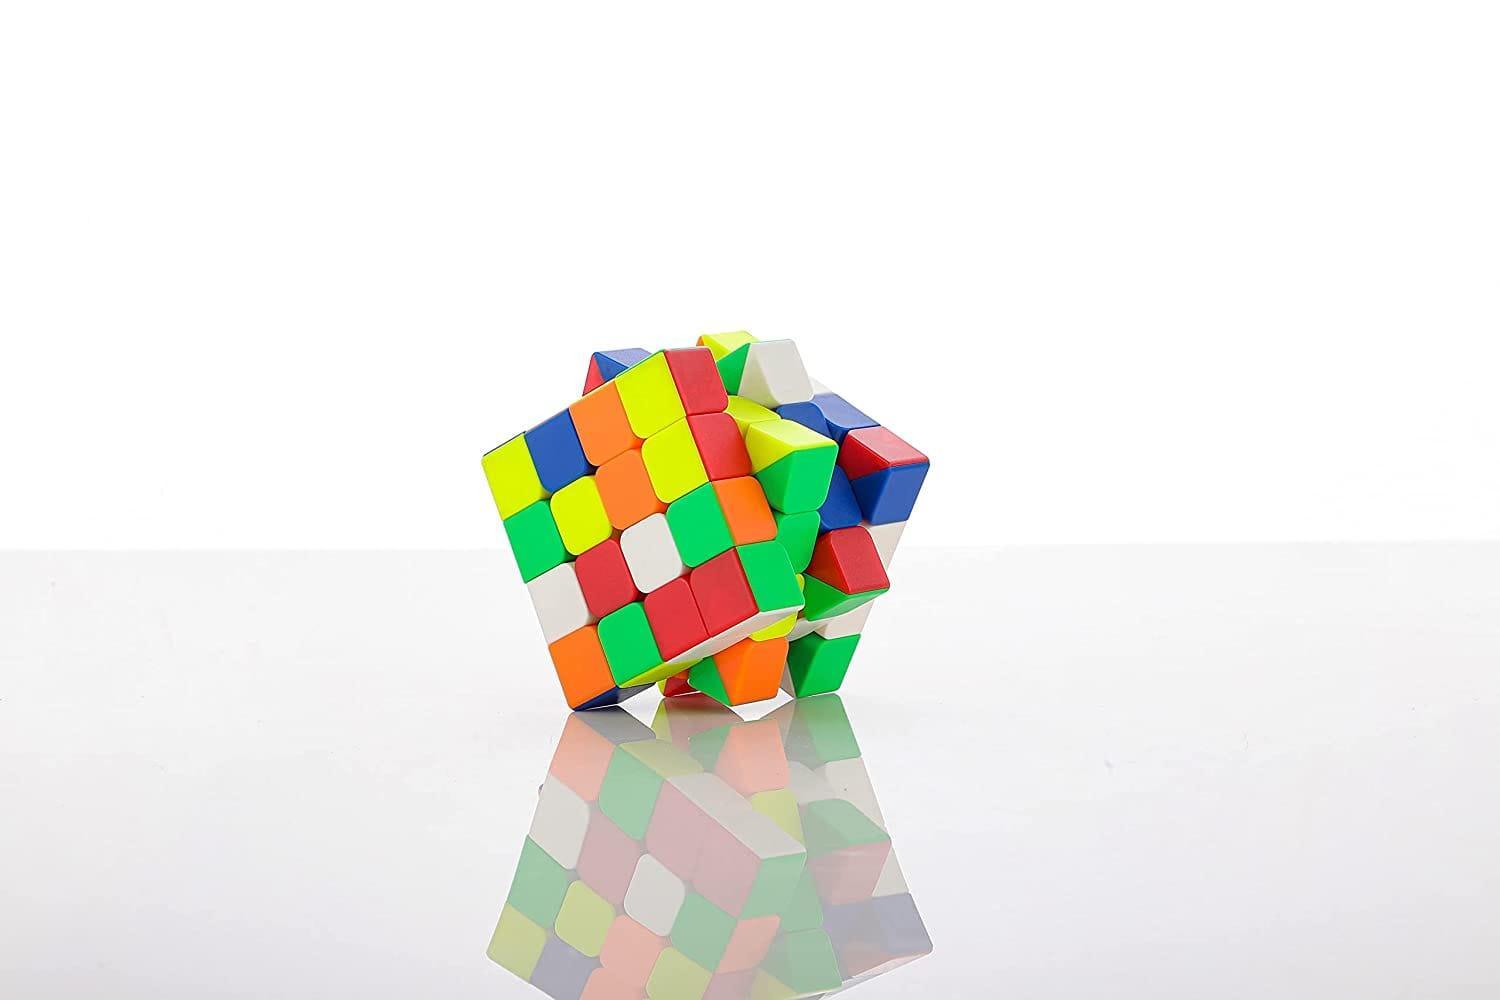 Classic Cubestar Puzzle Gameplay